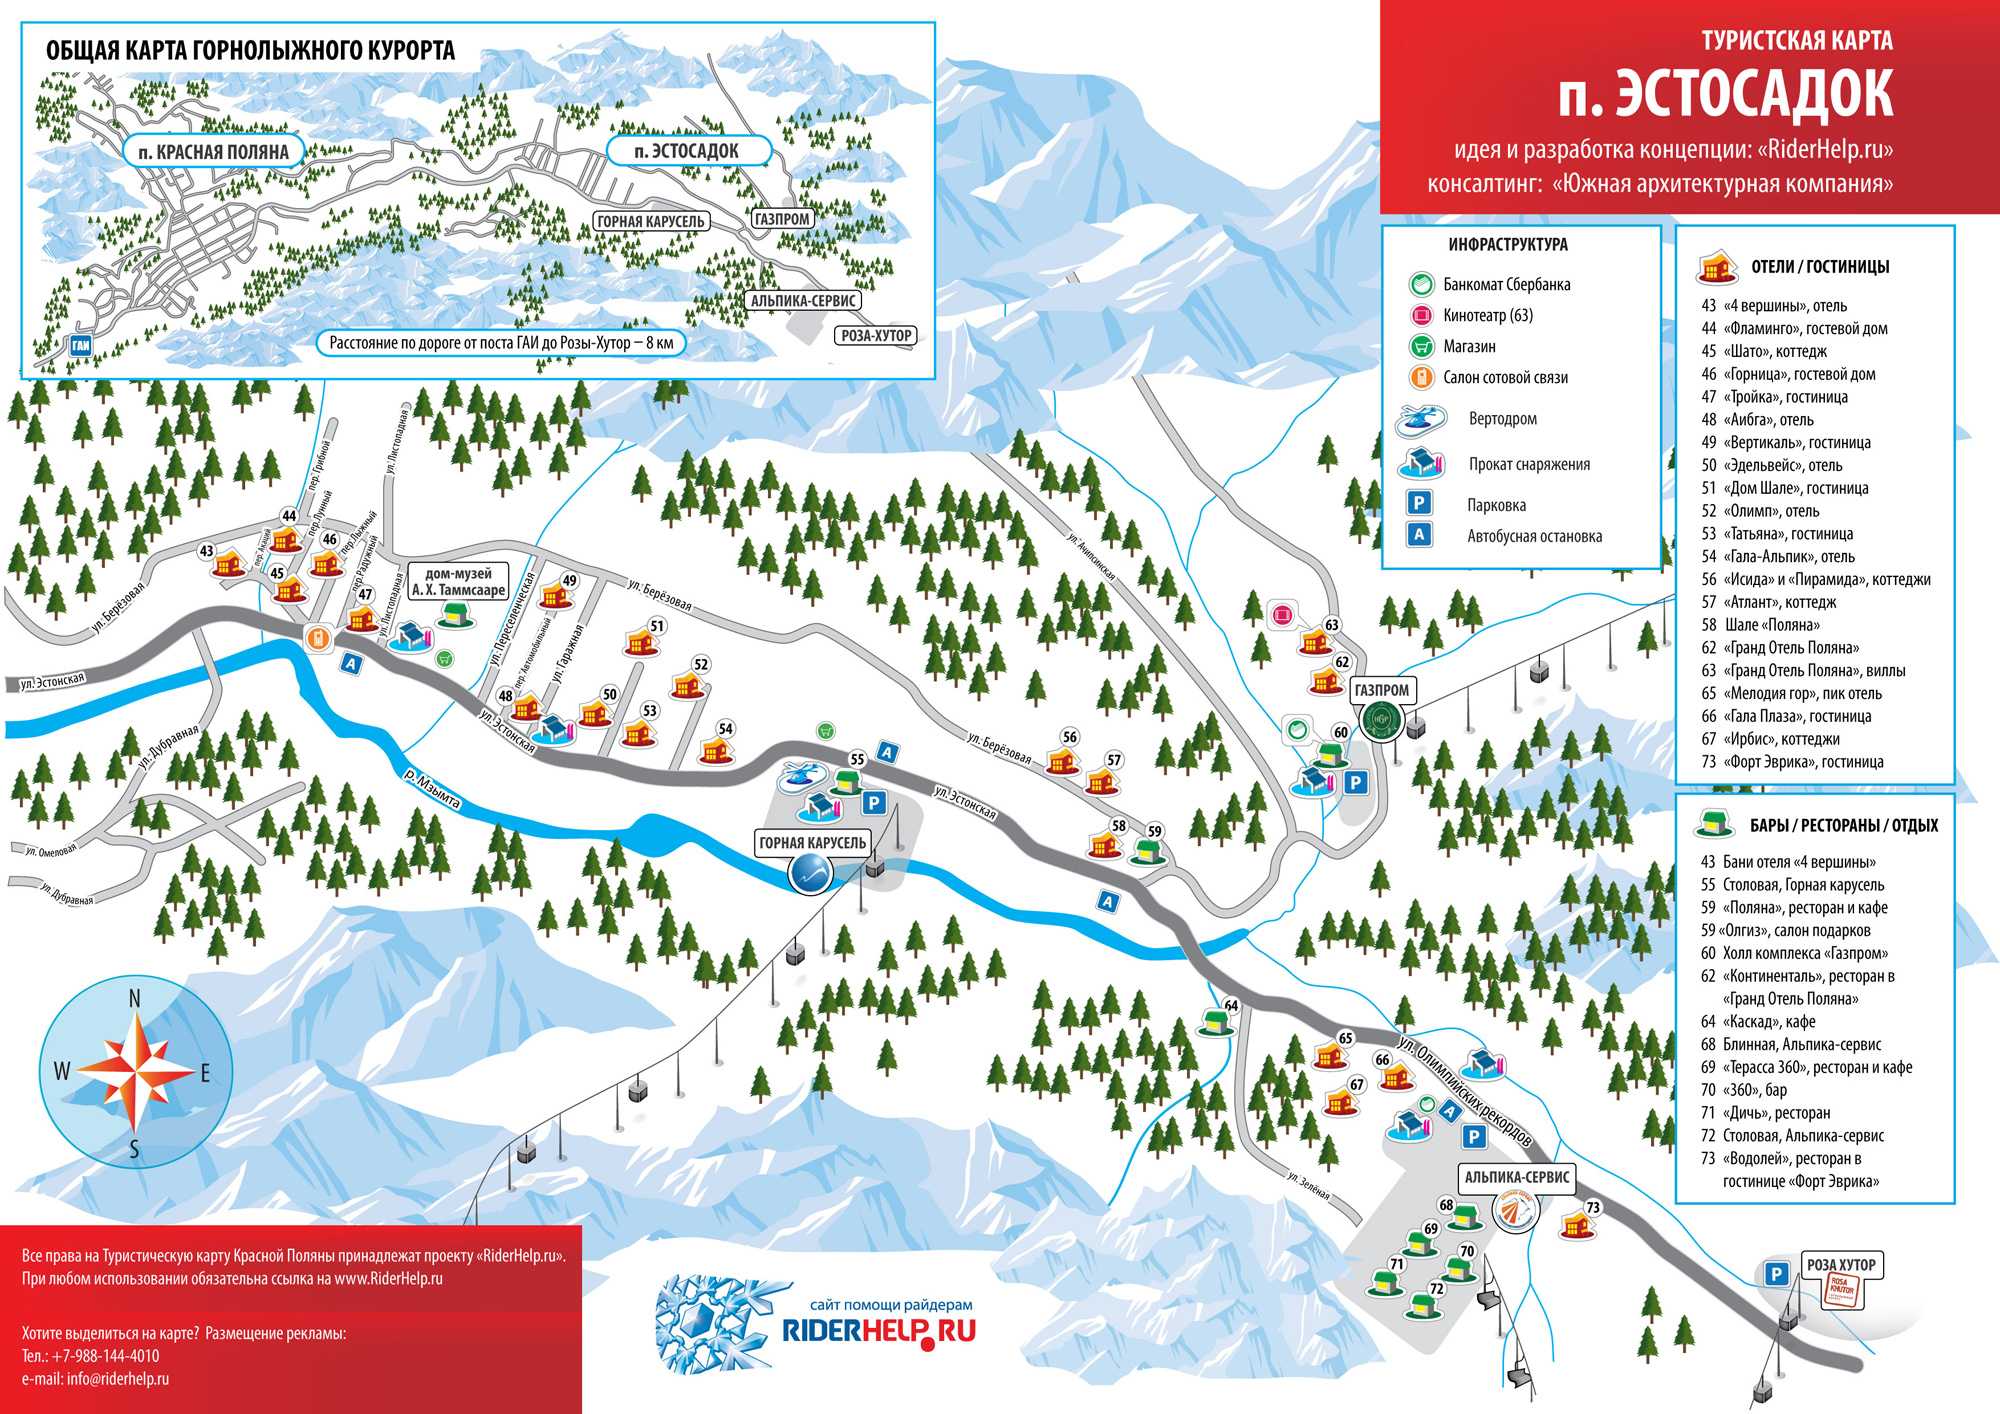 Газпром гтц / gazprom mountain resort - горнолыжные курорты и склоны россии